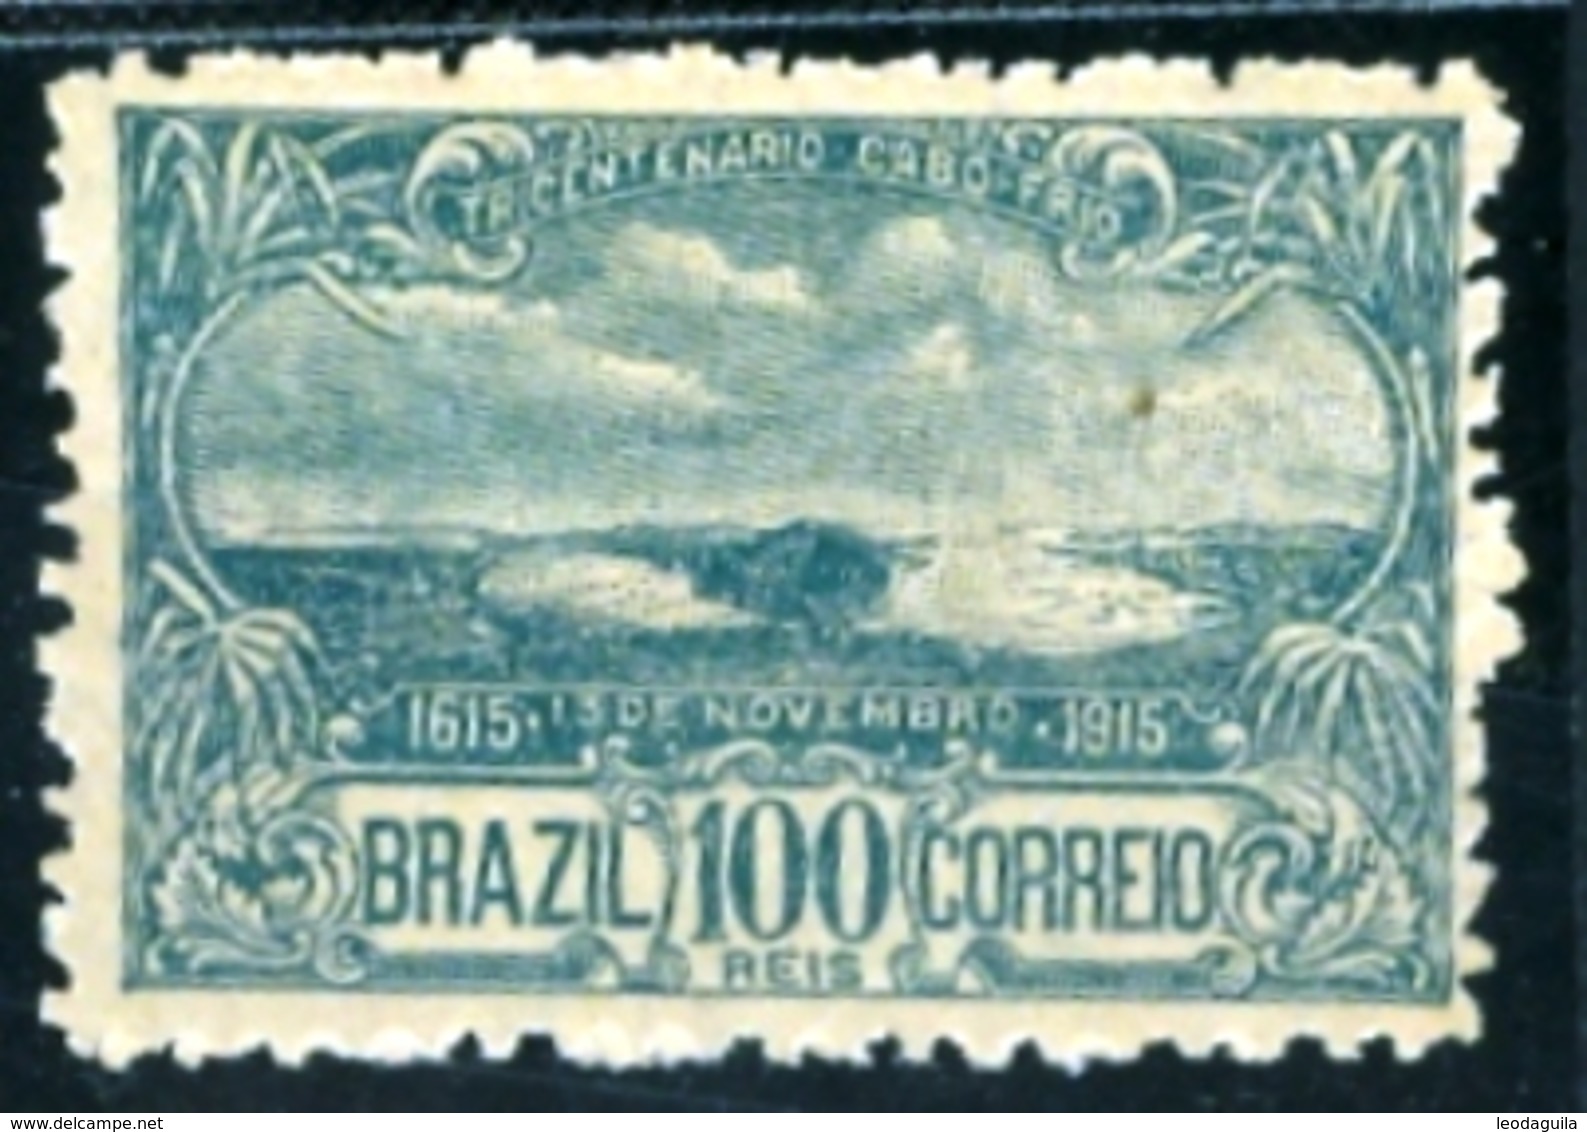 BRAZIL # 165  - FOUNDATION  CITY OF CABO FRIO - 3rd  CENTENARY  -  MINT / OG  - 1915 - Neufs